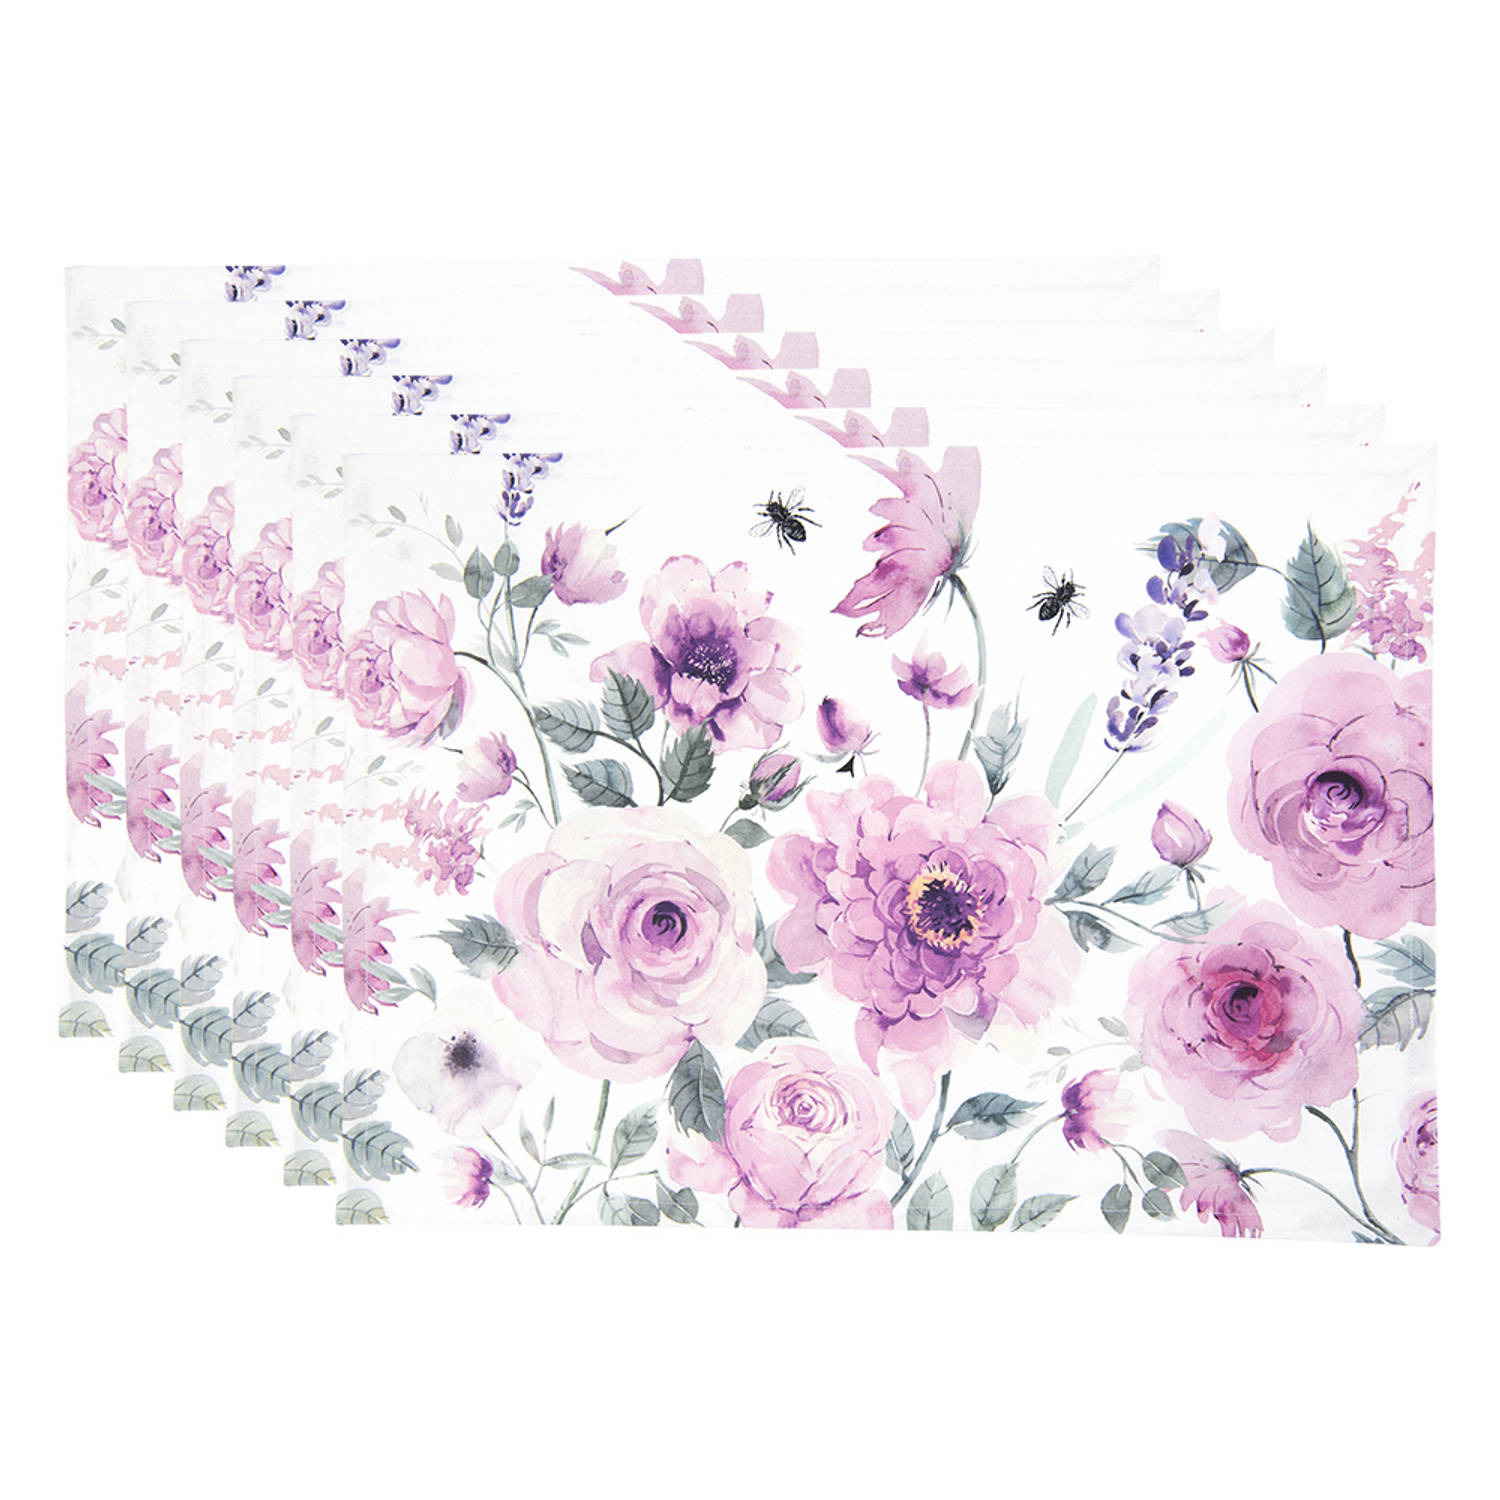 HAES DECO - Set van 6 Placemats - formaat 48x33 cm - kleuren Paars / Roze / Wit /Groen - van 100% Katoen - Collectie: Roses and Butterflies